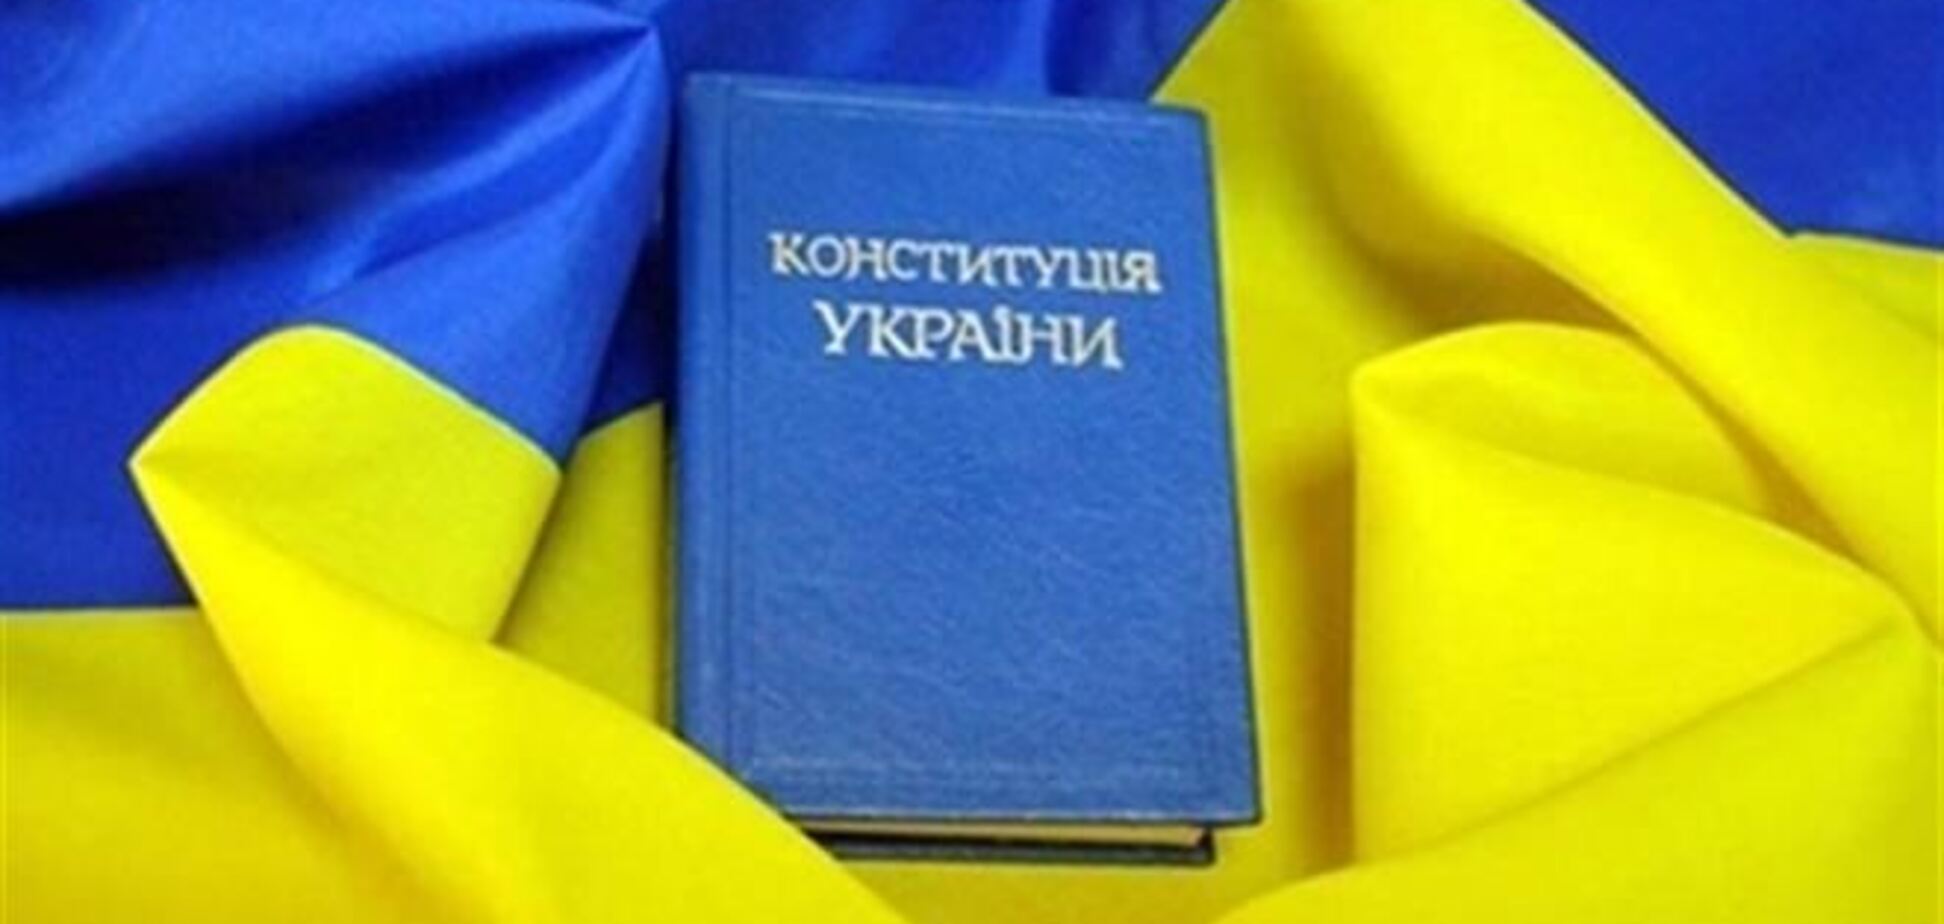 Соболев уверяет, что оппозиция согласовала изменение Конституции